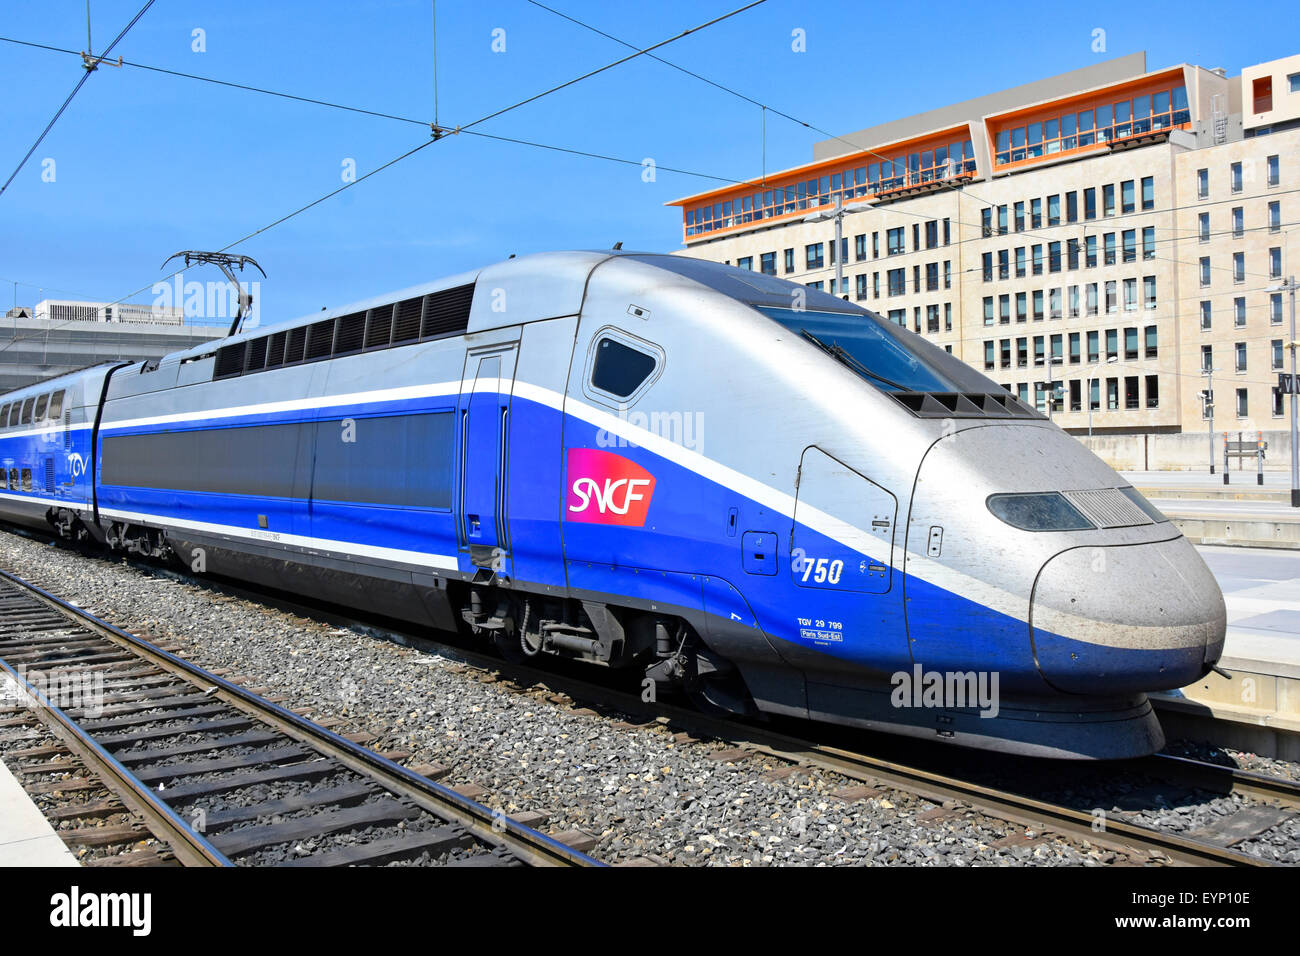 Tren de alta velocidad cerca de Francia aerodinámica SNCF TGV de alta velocidad tren de pasajeros en la estación francesa de Marsella a punto de zarpar de plataforma Foto de stock